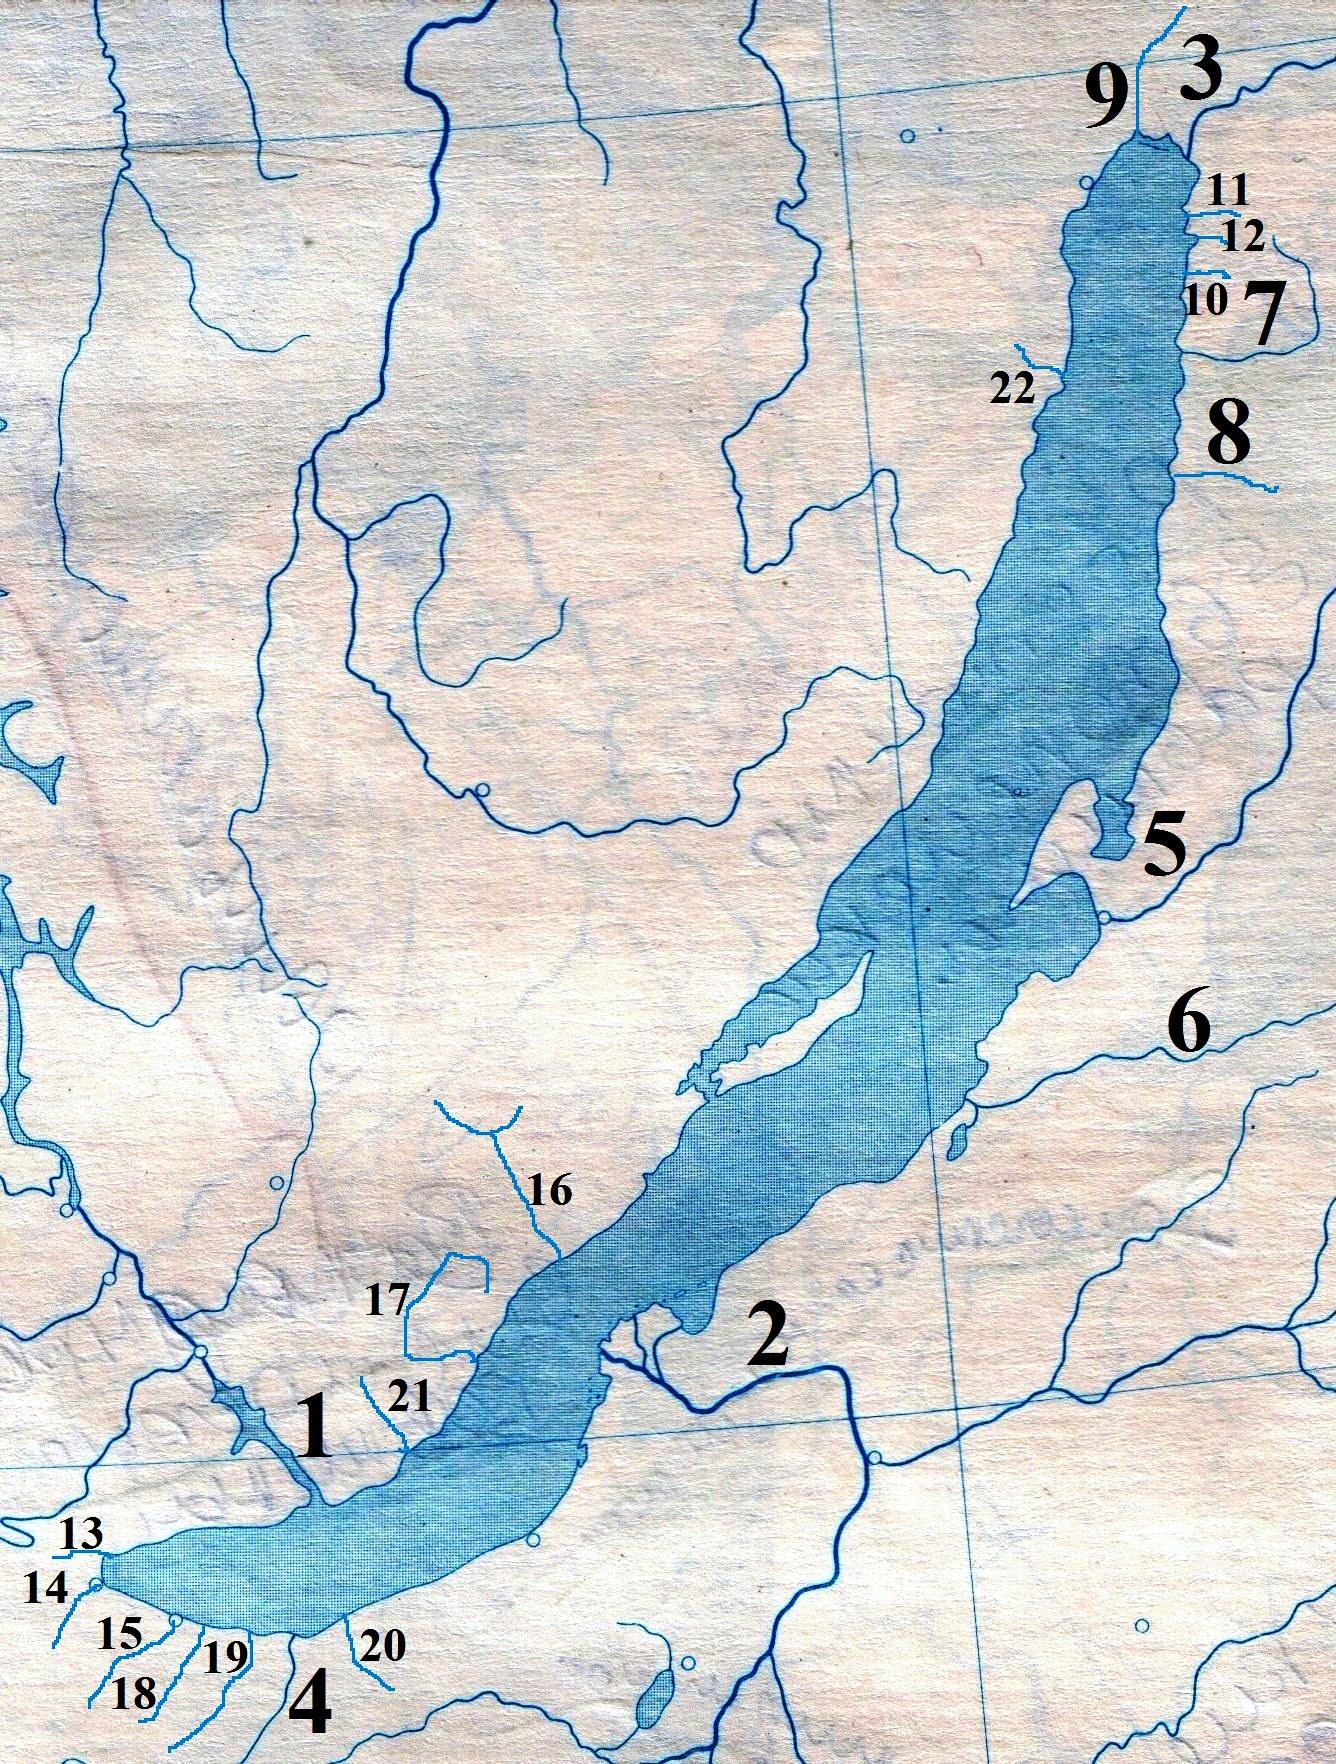 Озеро Байкал и Ангара на карте